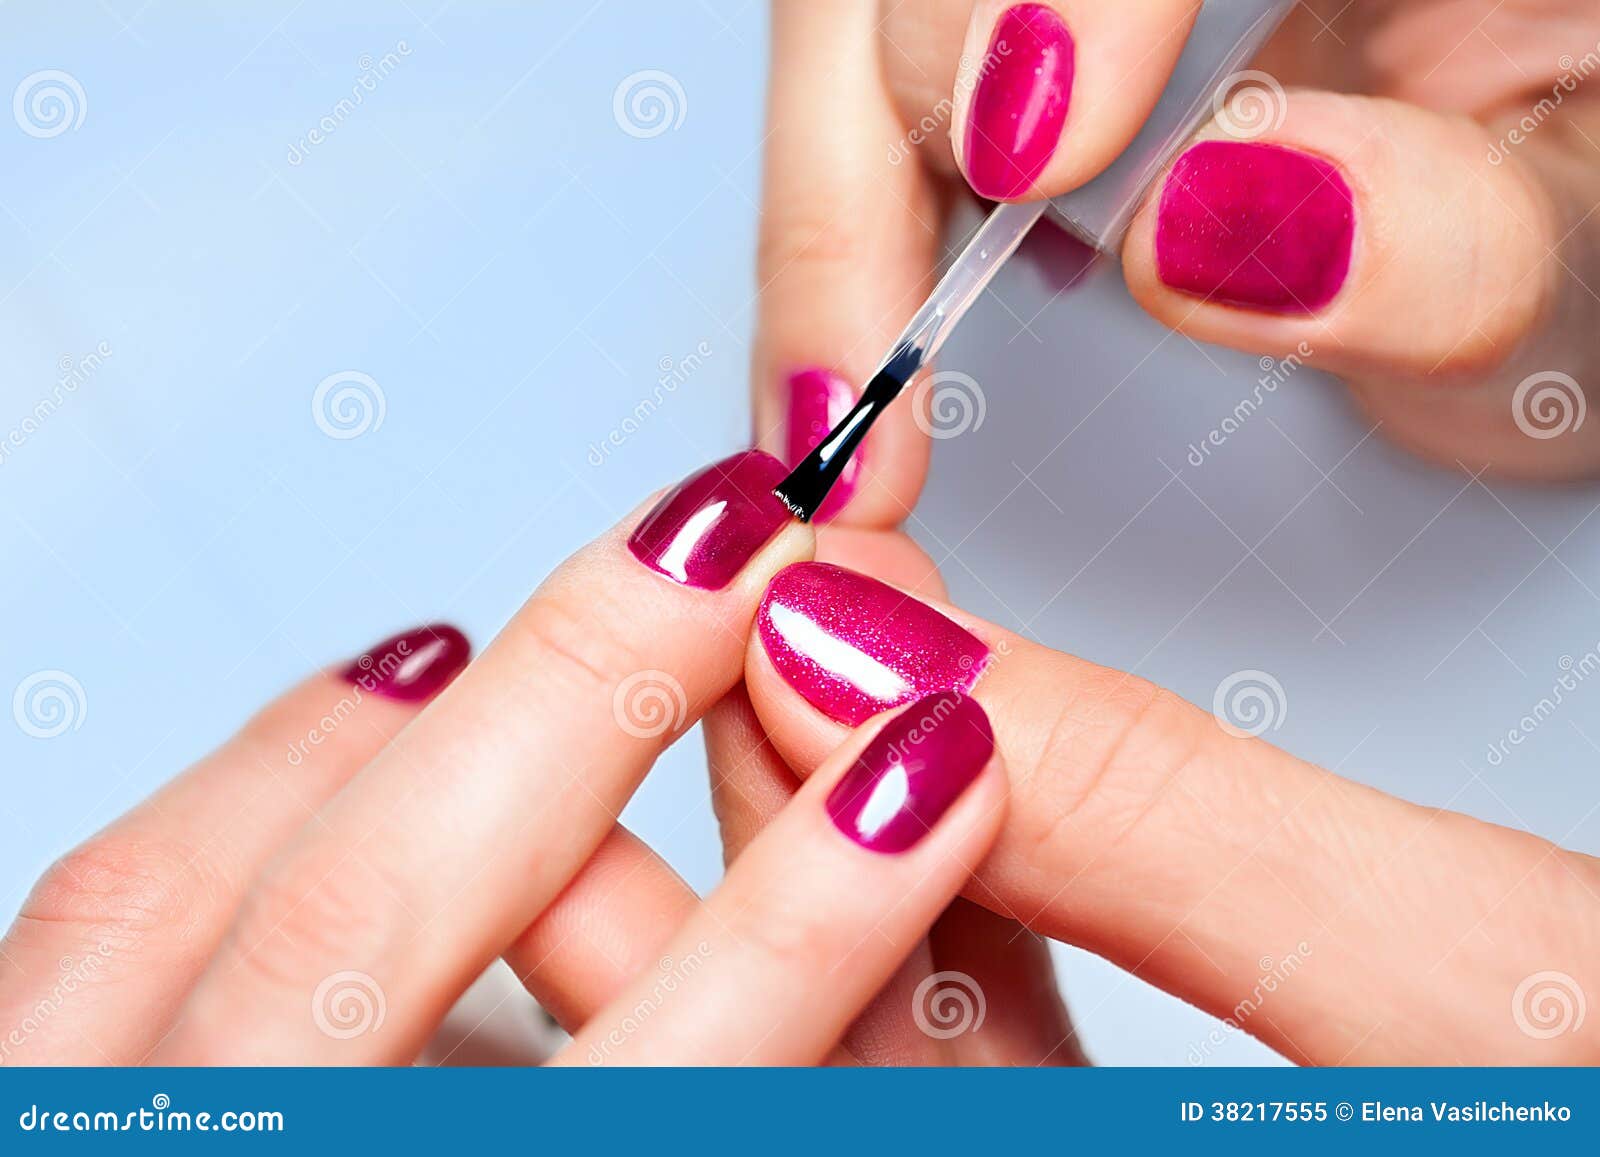 woman applying nail varnish to finger nails